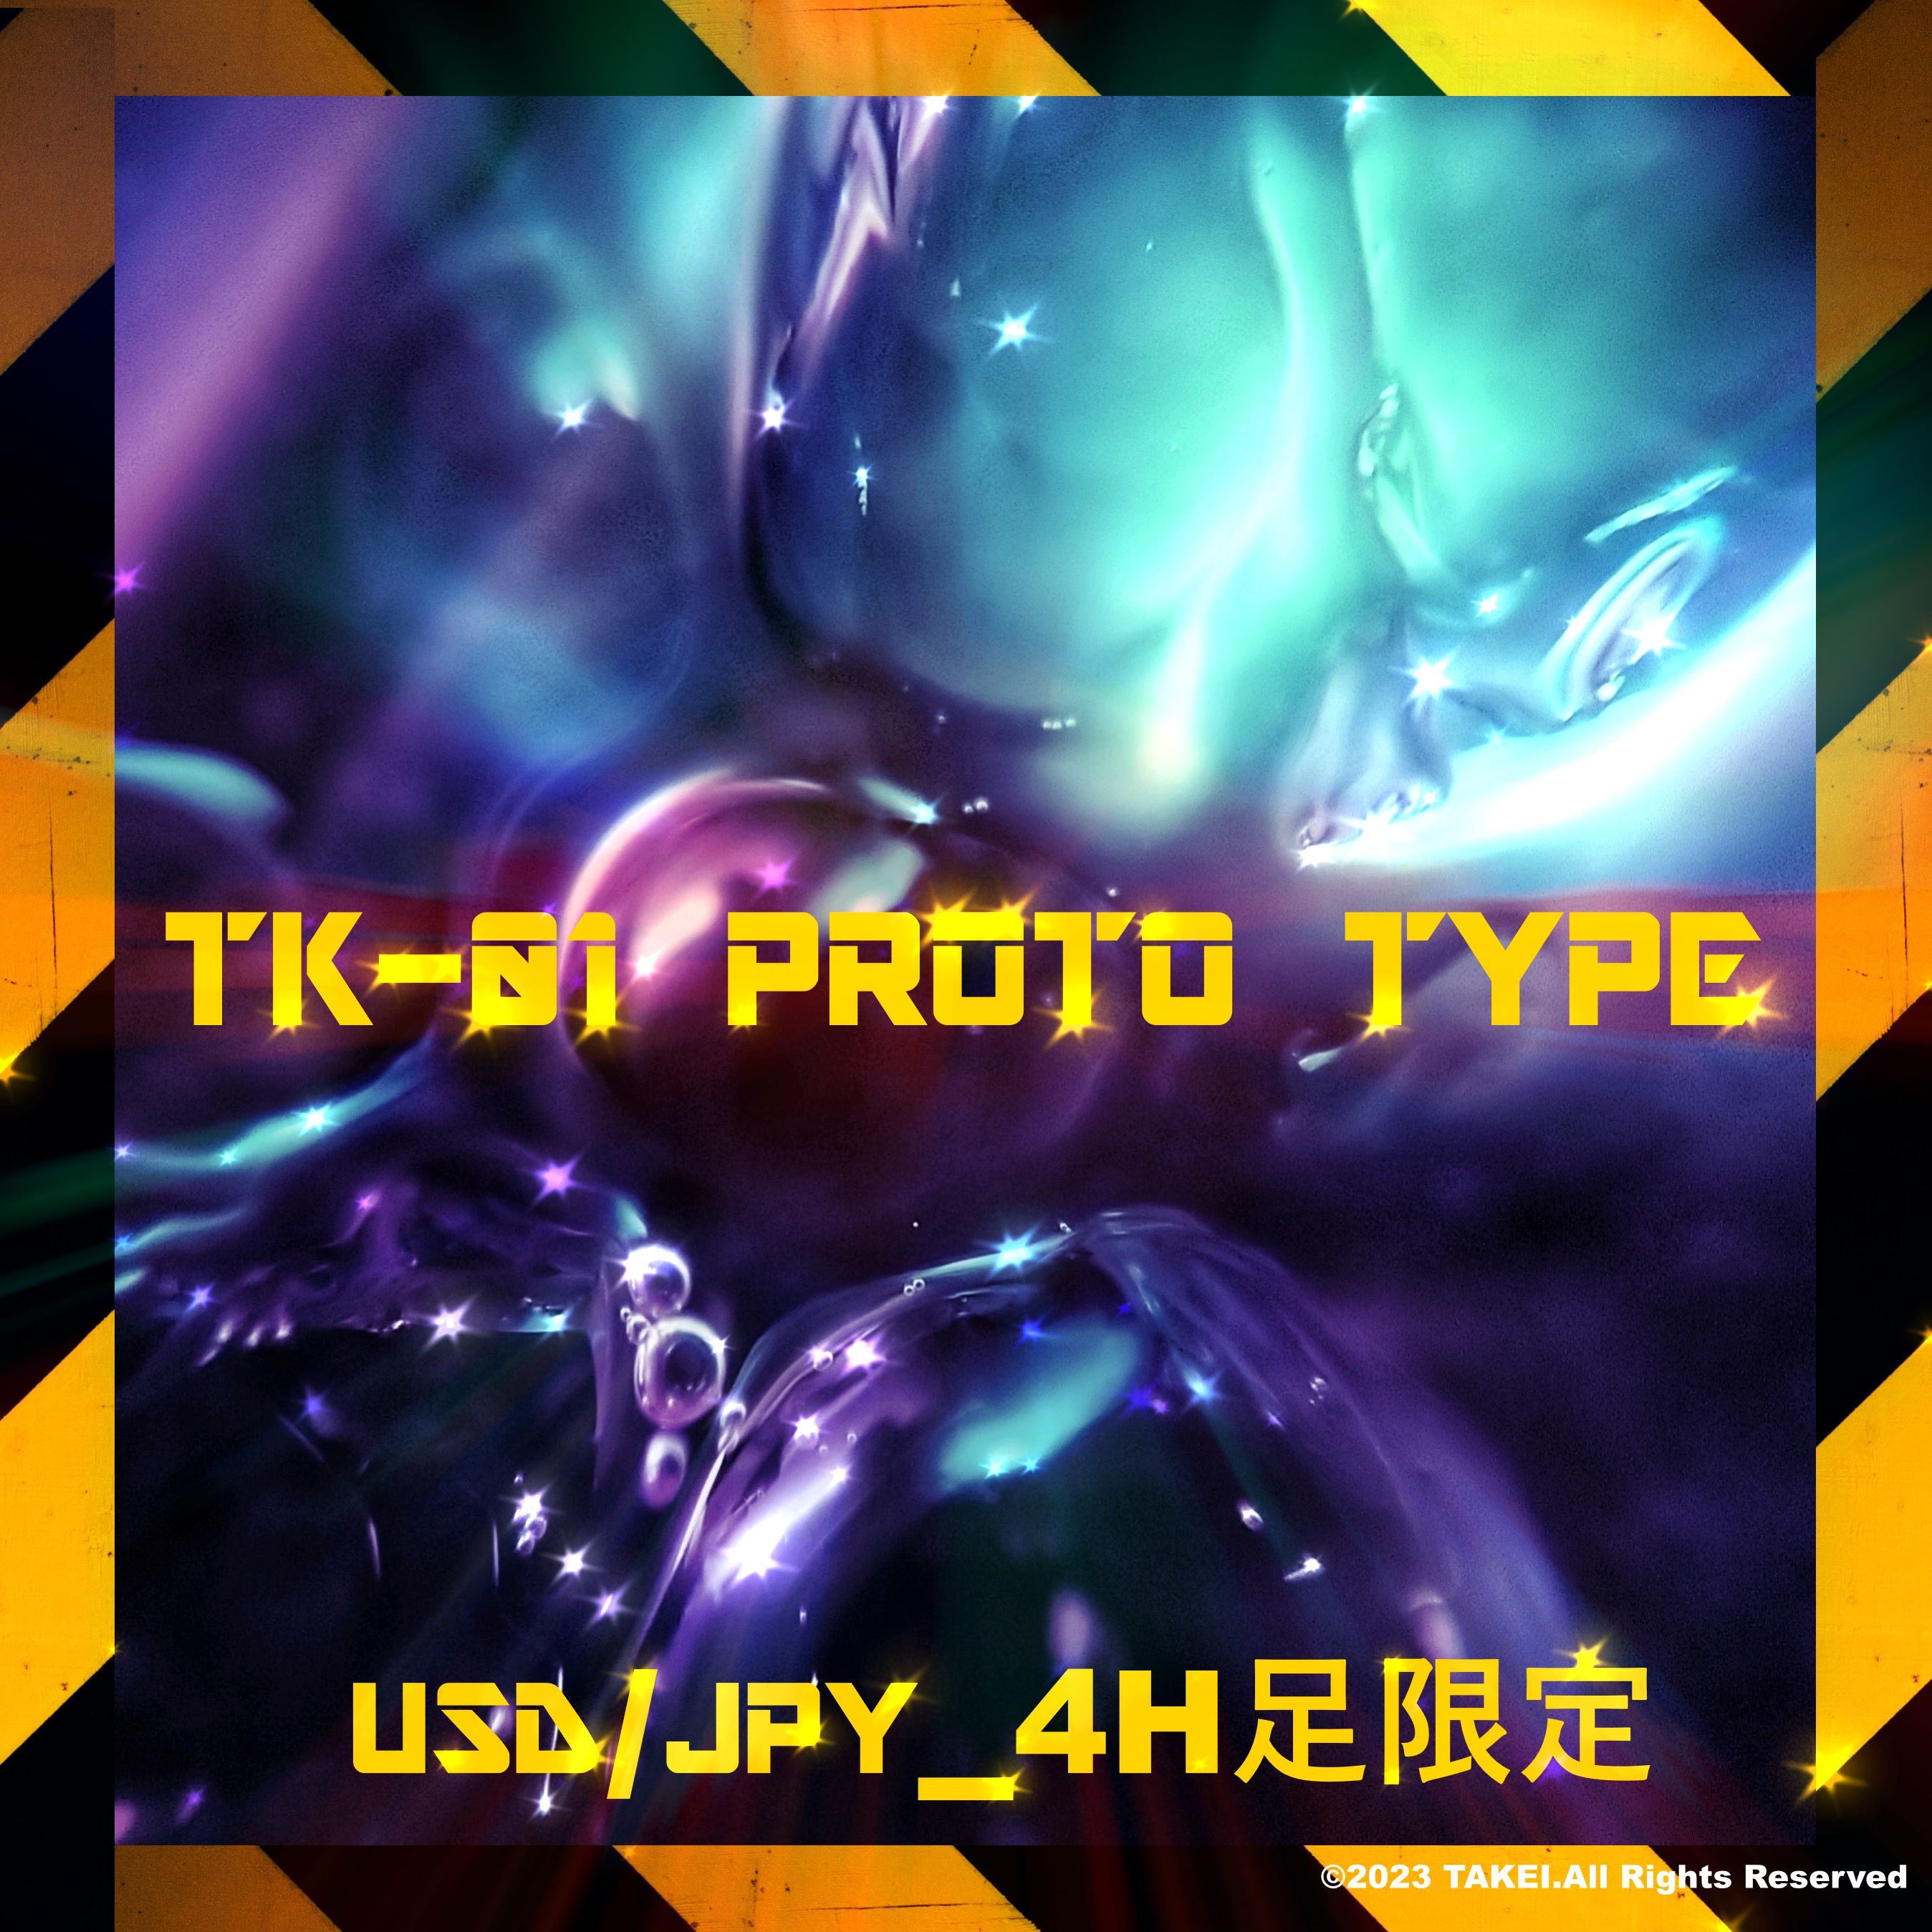 TK-01 PROTO TYPE(初号機_トレンド,初号機_エントリーサイン,初号機_モニター,初号機_Autoエントリー) インジケーター・電子書籍